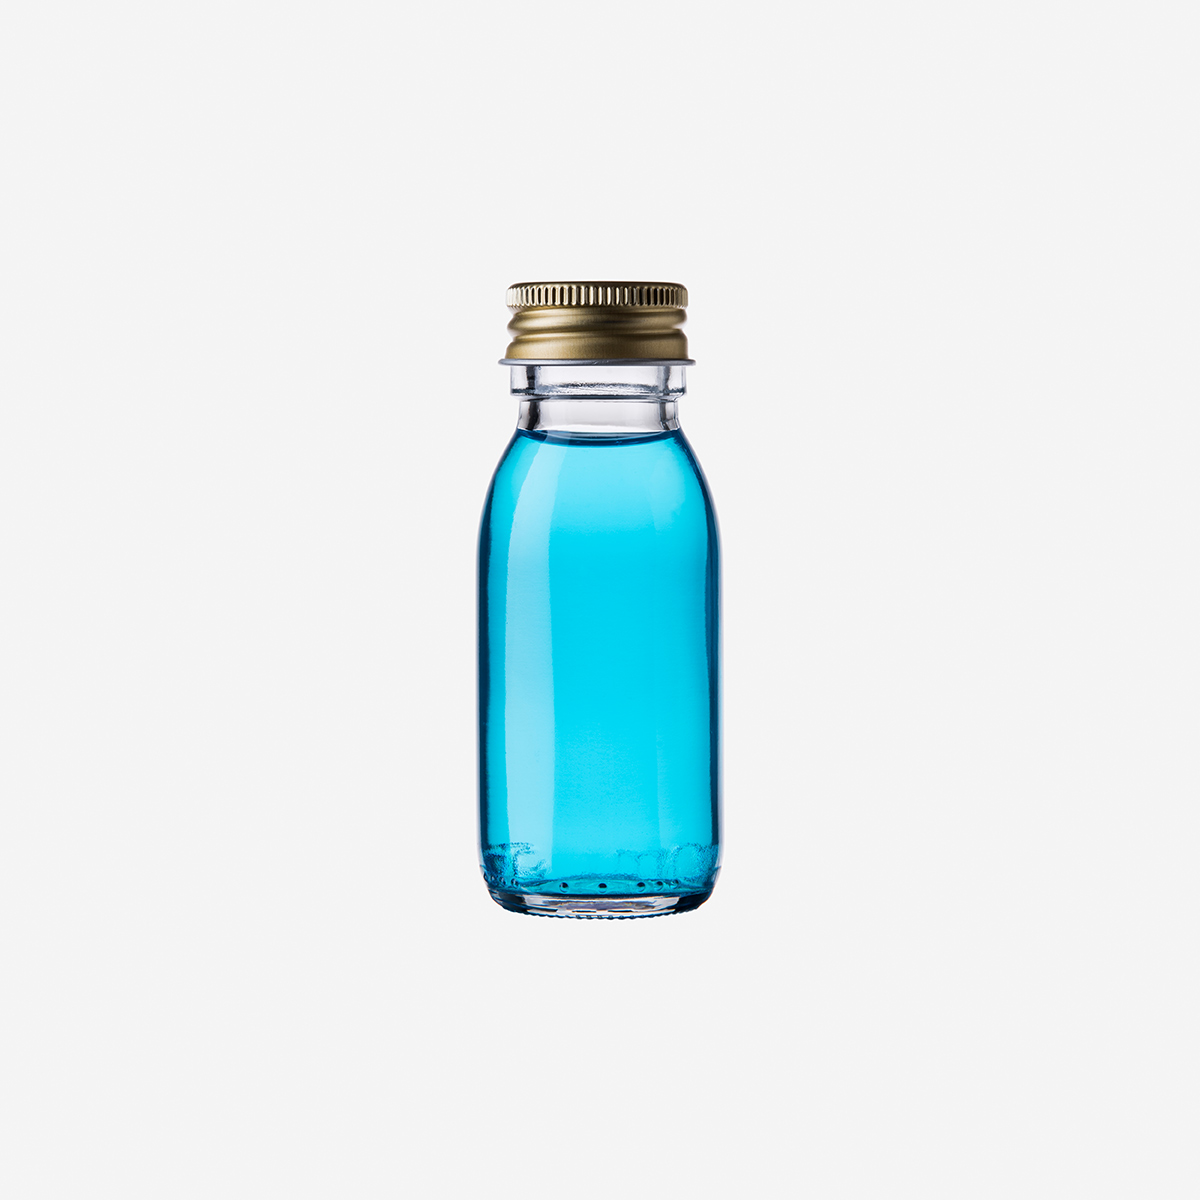 60 ml Glasflasche für Frischsaft, Sirup und Shots (Palette à 7.020 Flaschen)